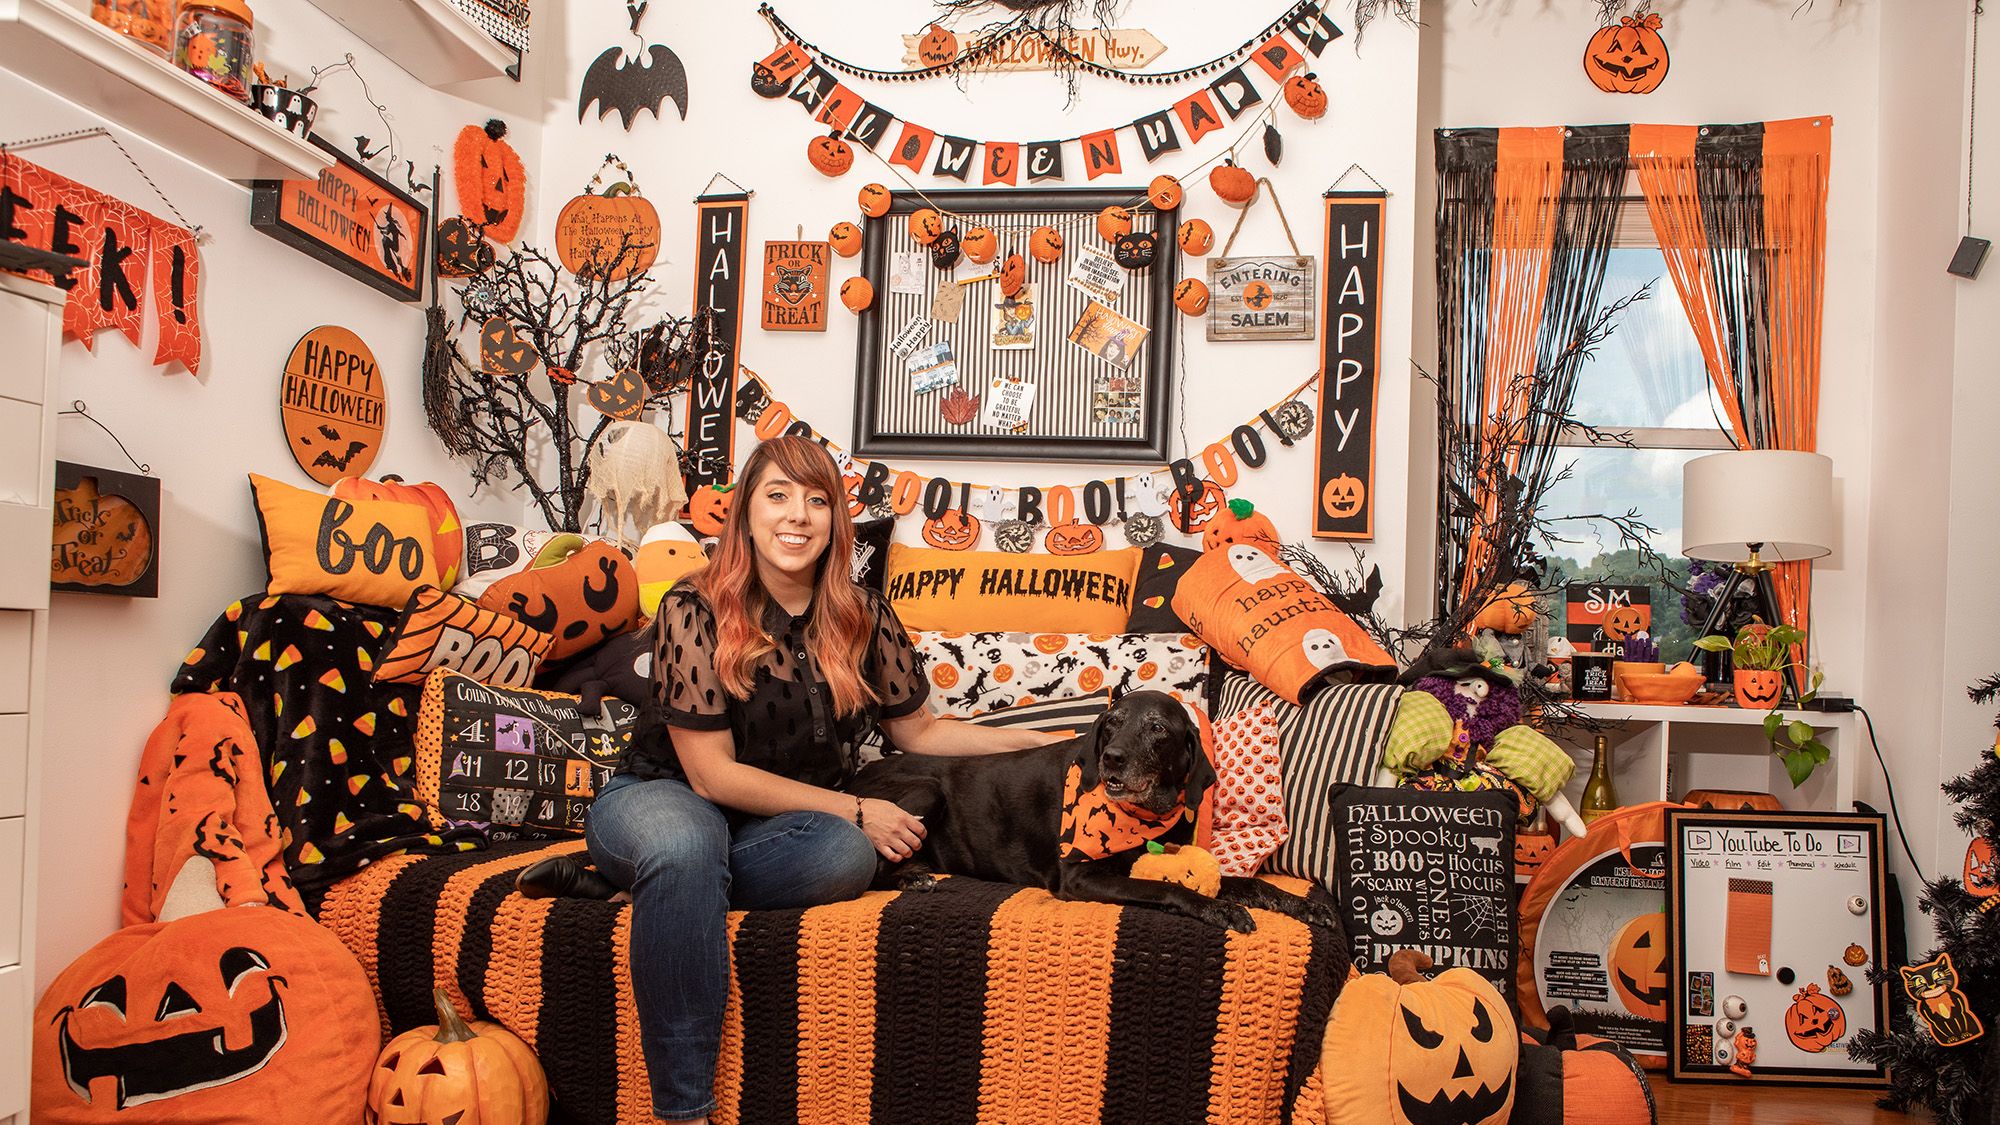 Halloween Happy House Tour — Halloween-Themed House Photos